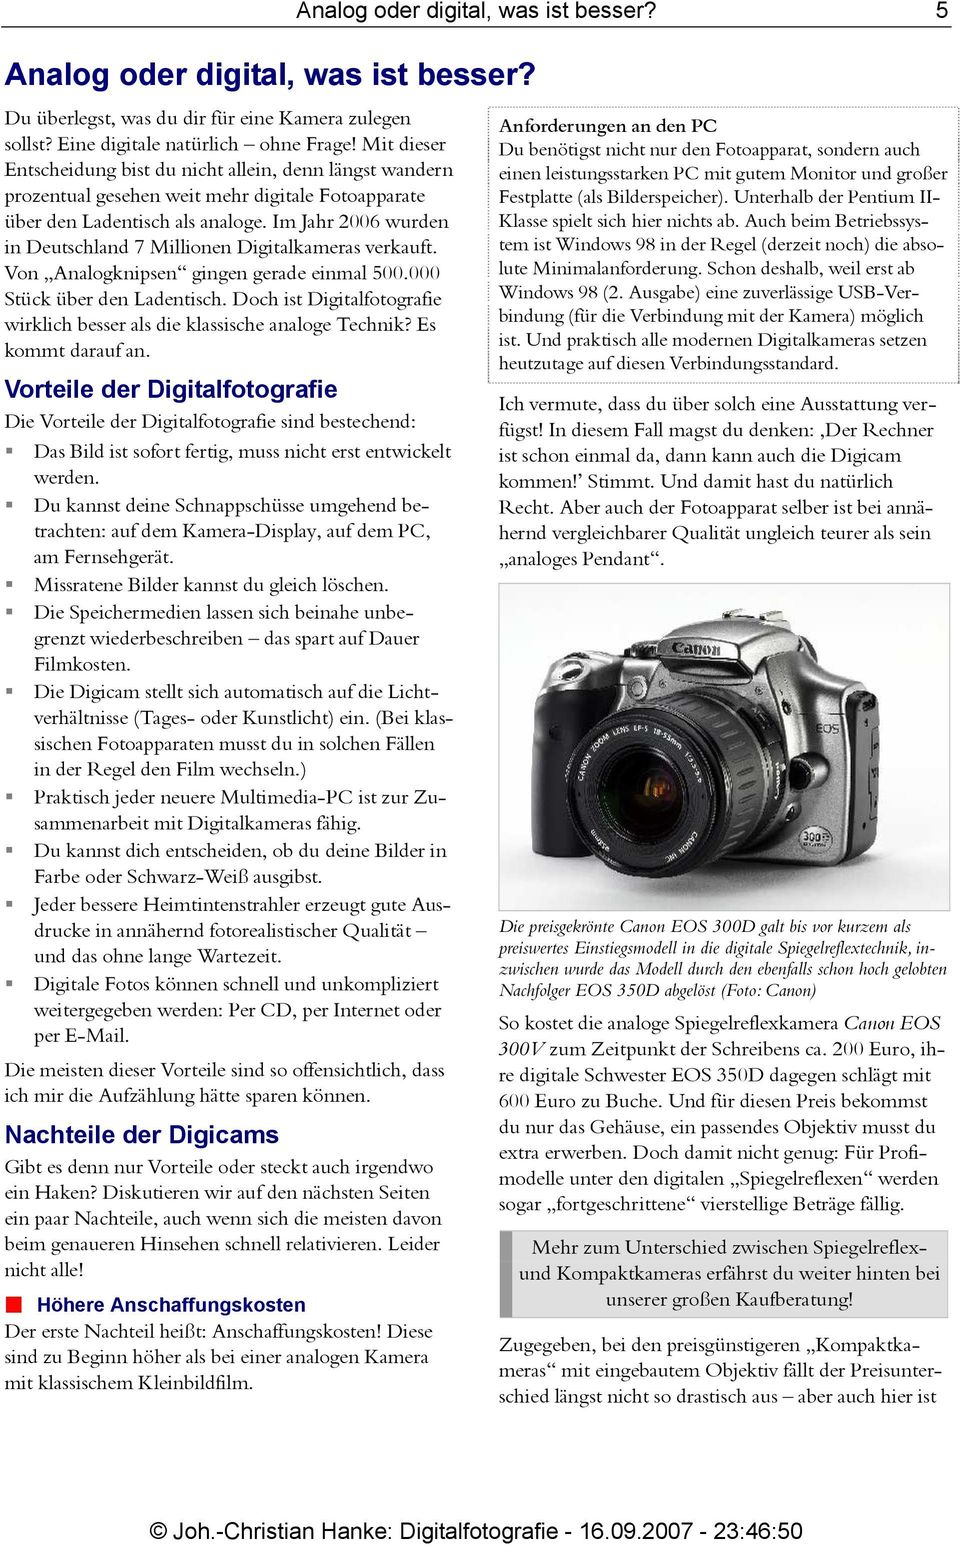 Im Jahr 2006 wurden in Deutschland 7 Millionen Digitalkameras verkauft. Von Analogknipsen gingen gerade einmal 500.000 Stück über den Ladentisch.